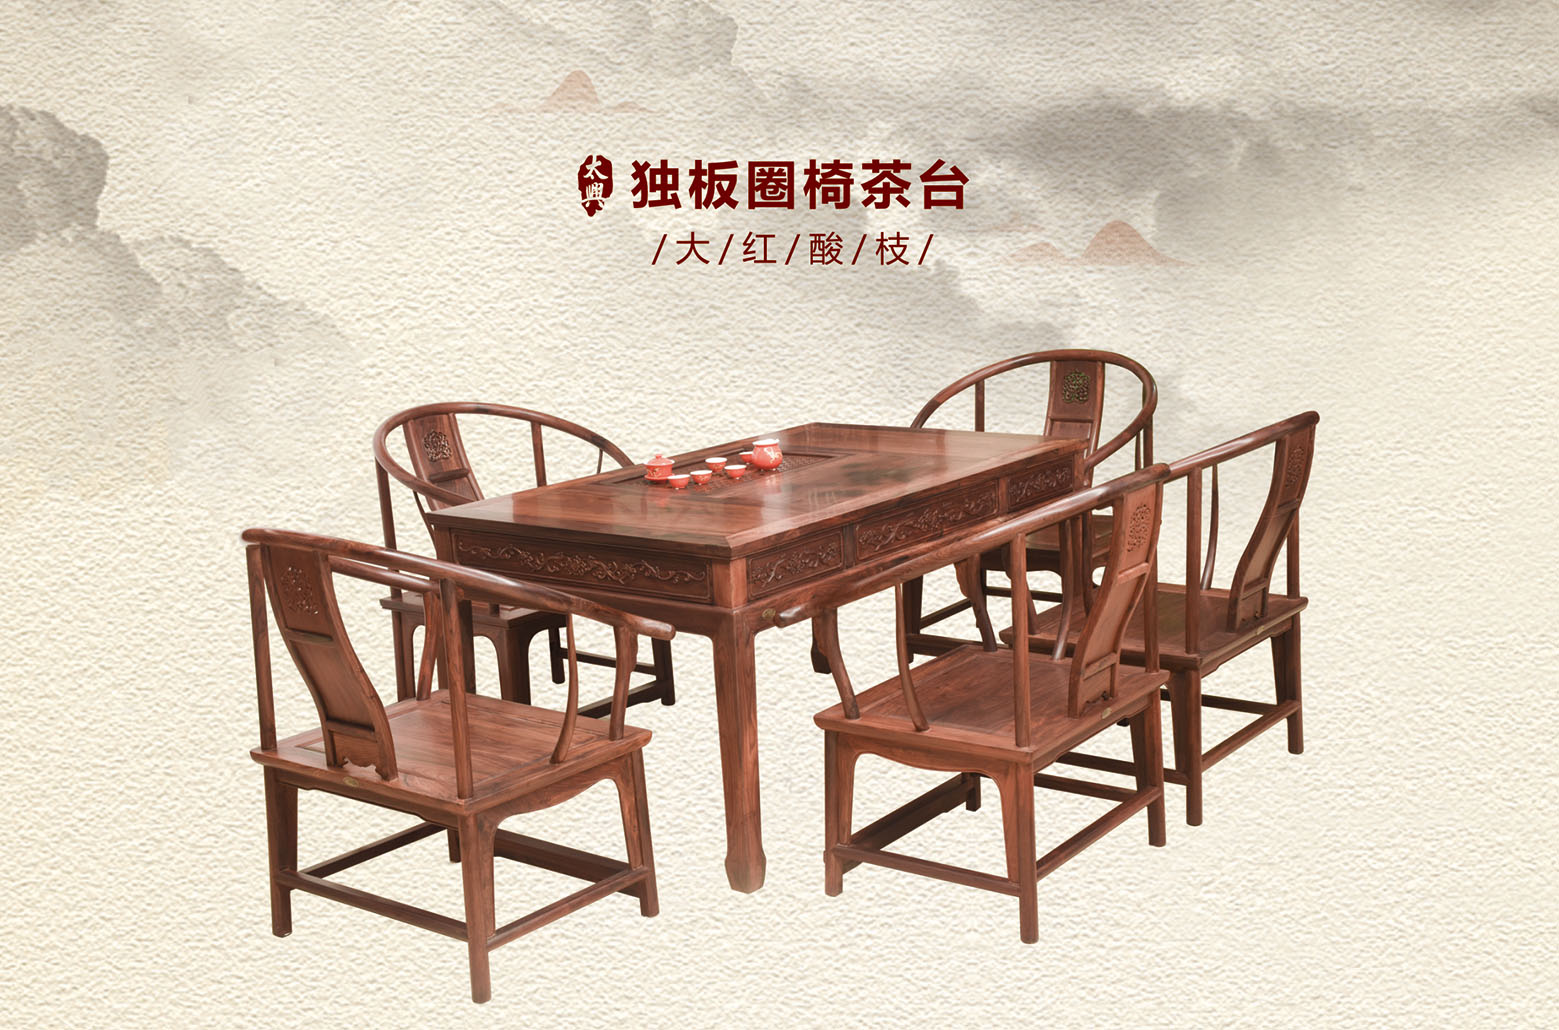 大红酸枝-独板圈椅茶台